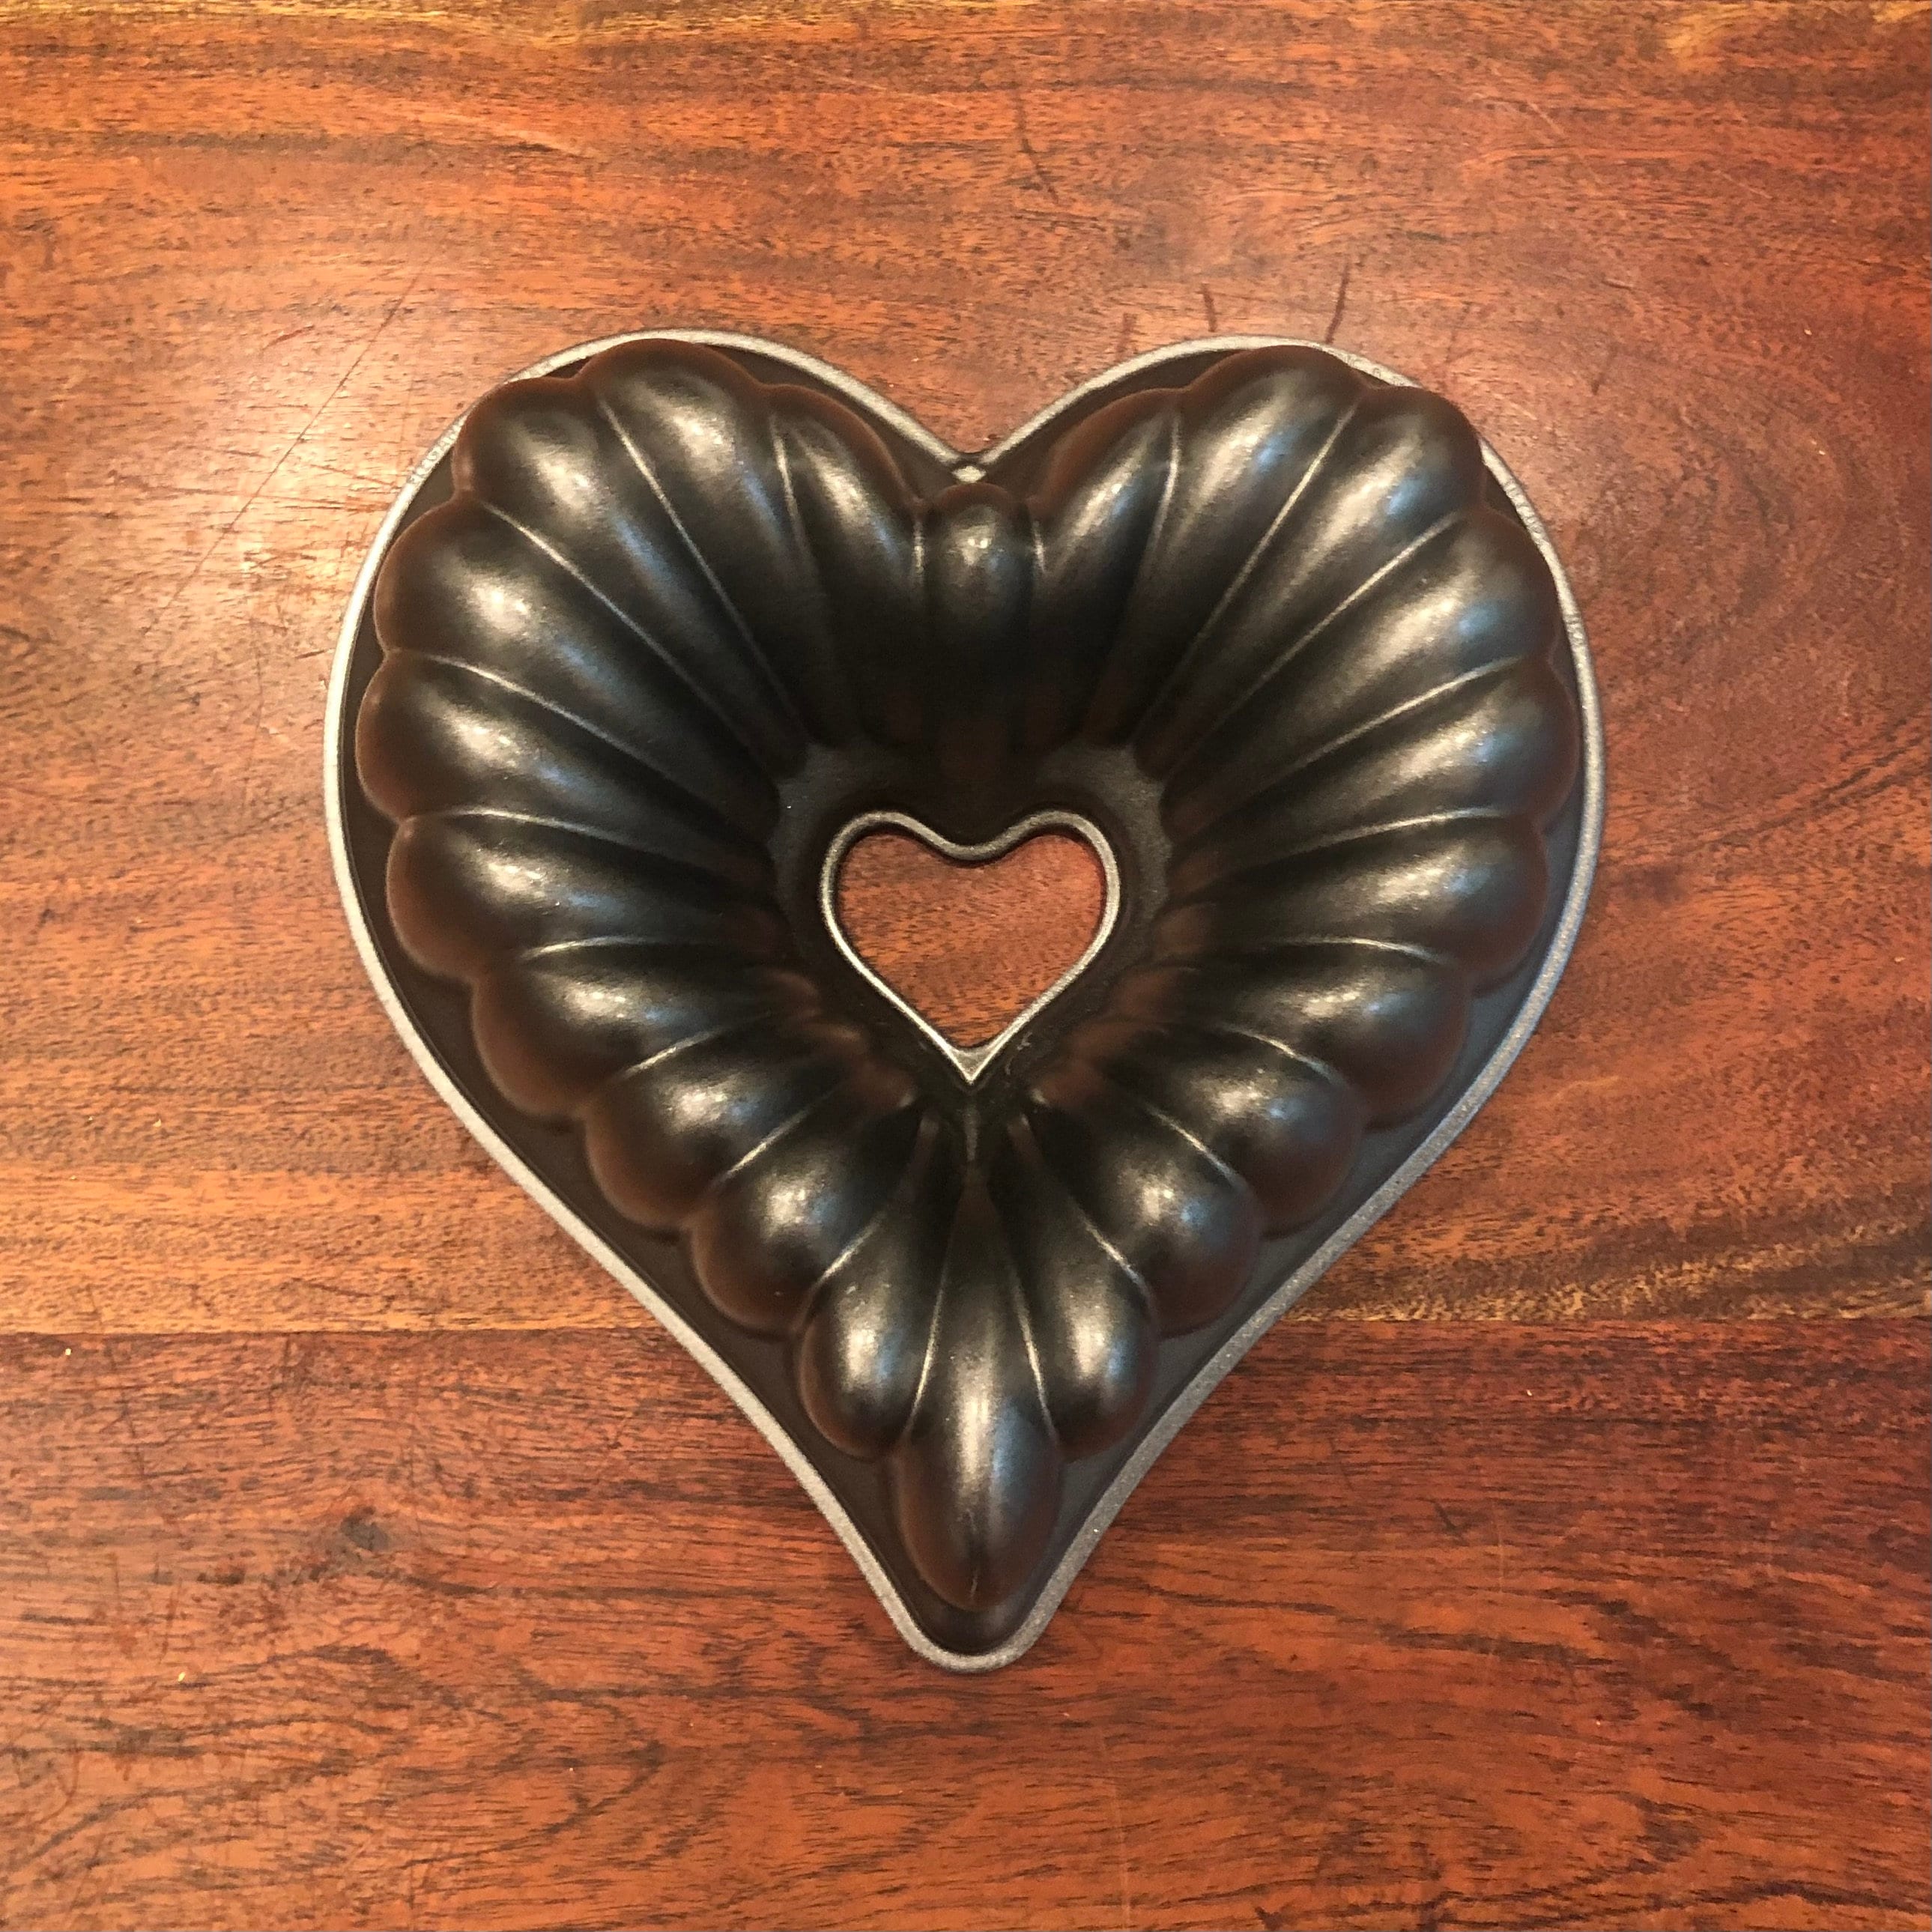 Tiered Heart Bundt® Pan - Nordic Ware